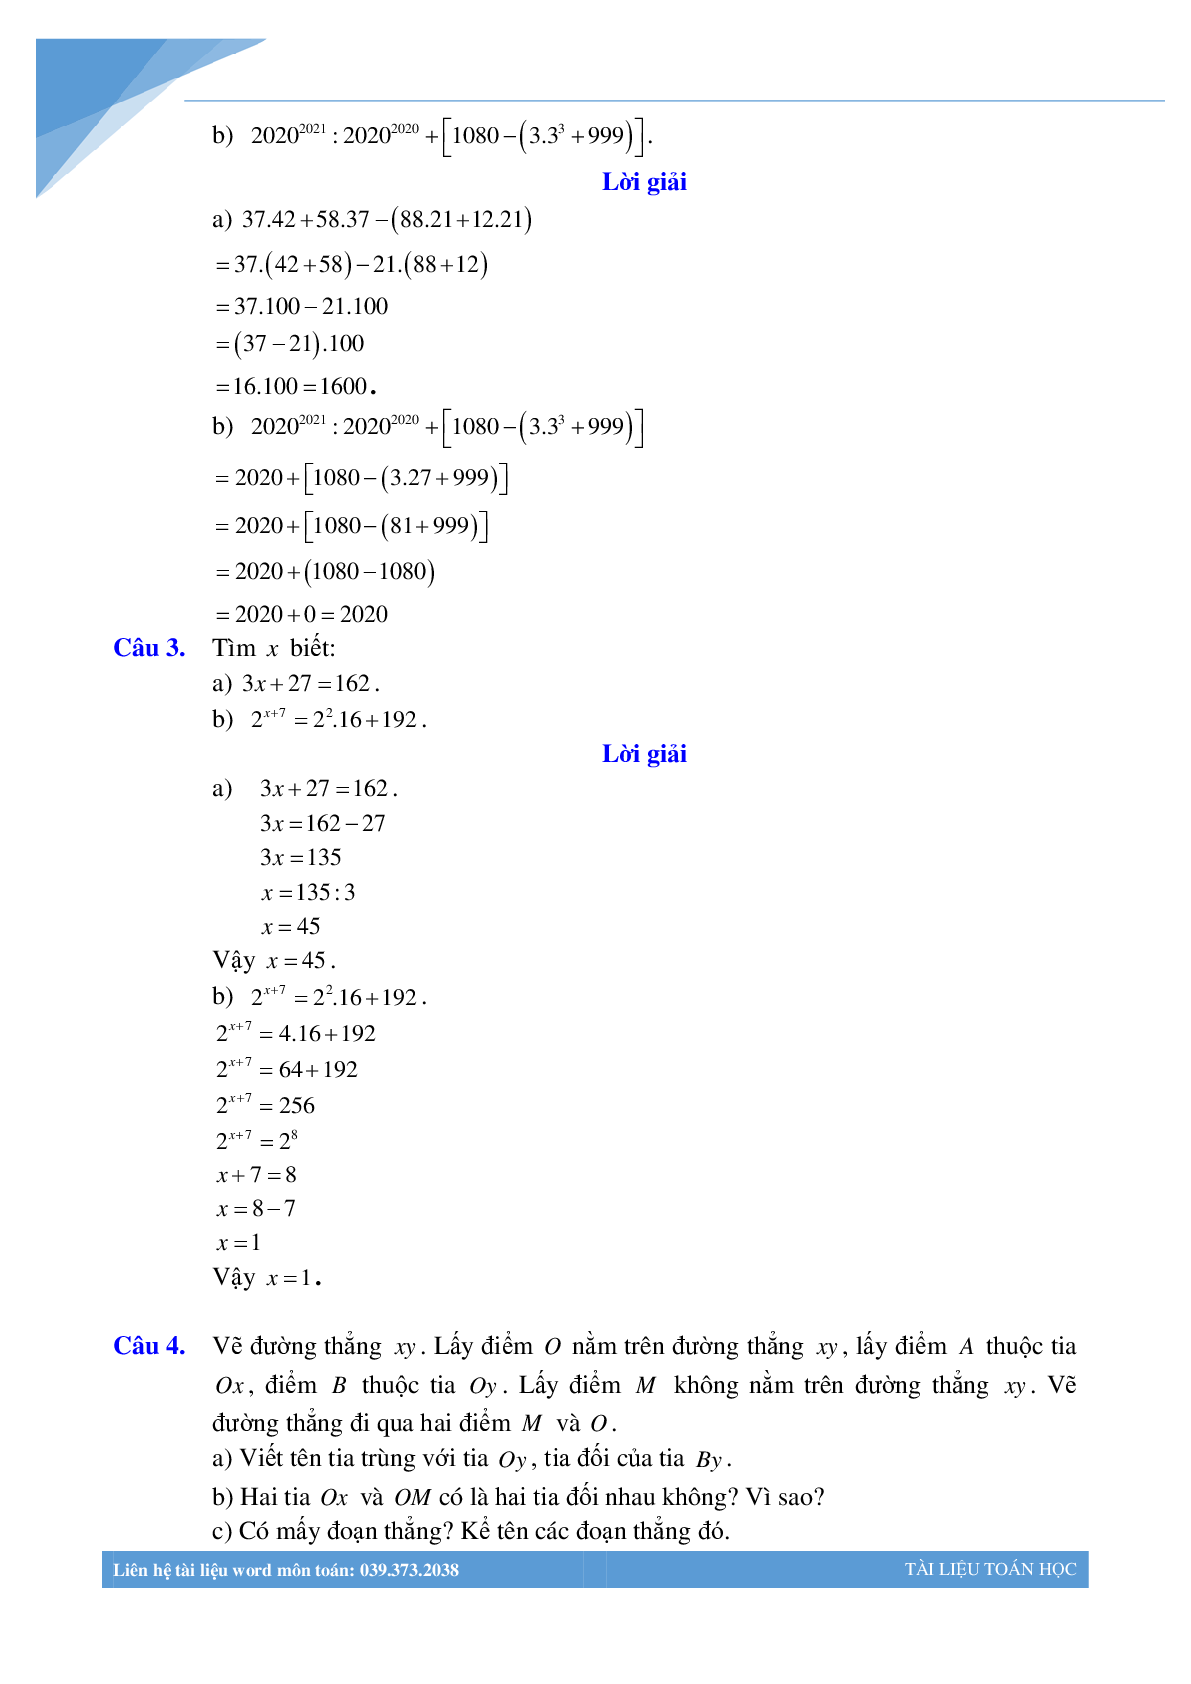 Bộ đề giữa học kì 1 môn toán lớp 6 Hà Nội năm 2021 (trang 2)